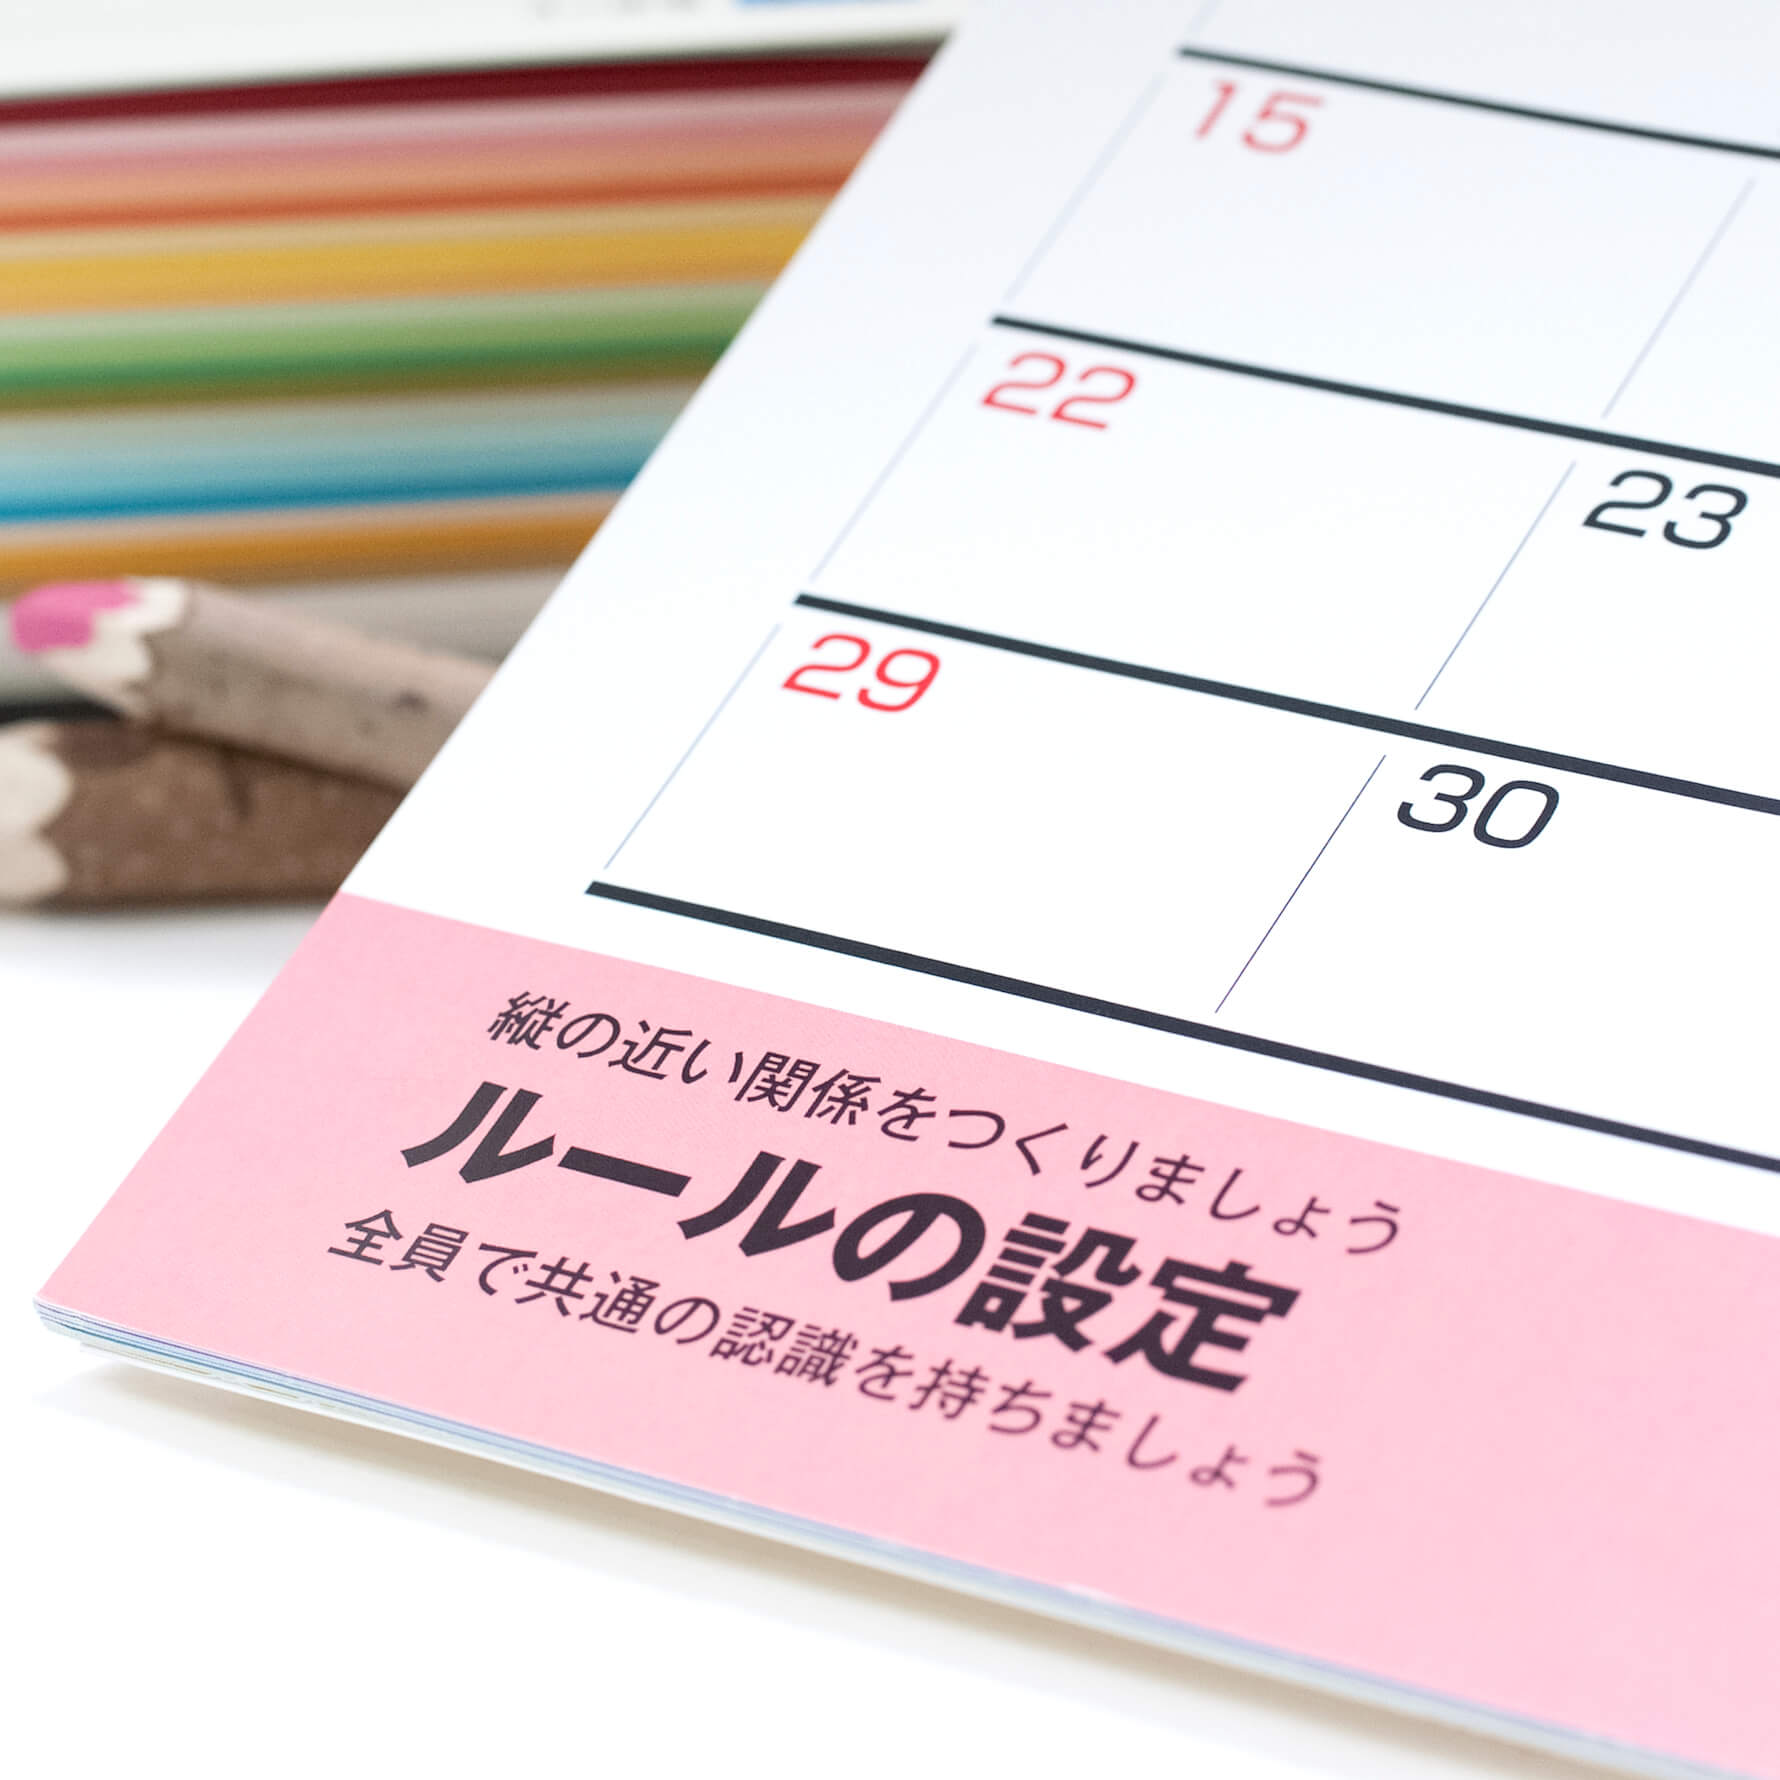 「株式会社授業学研究所 様」製作のオリジナルカレンダー ギャラリー写真2